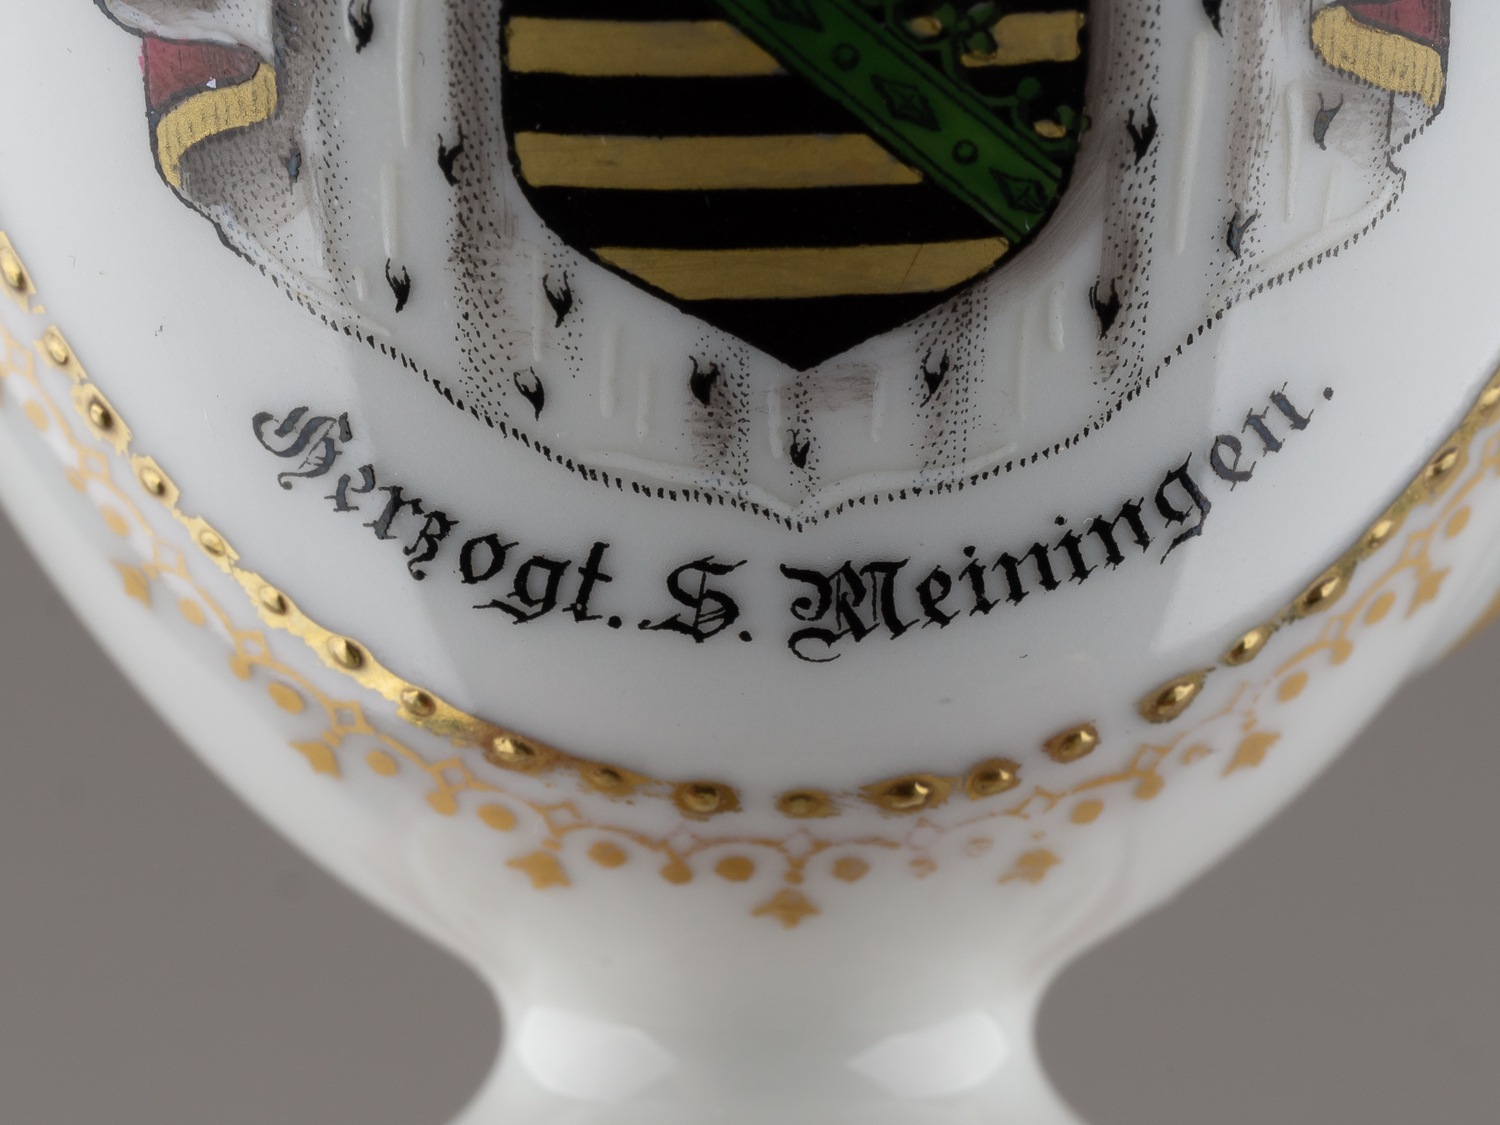 Чашка с изображением герба Саксонии. Германия, Саксония, конец XIX - начало XX века.